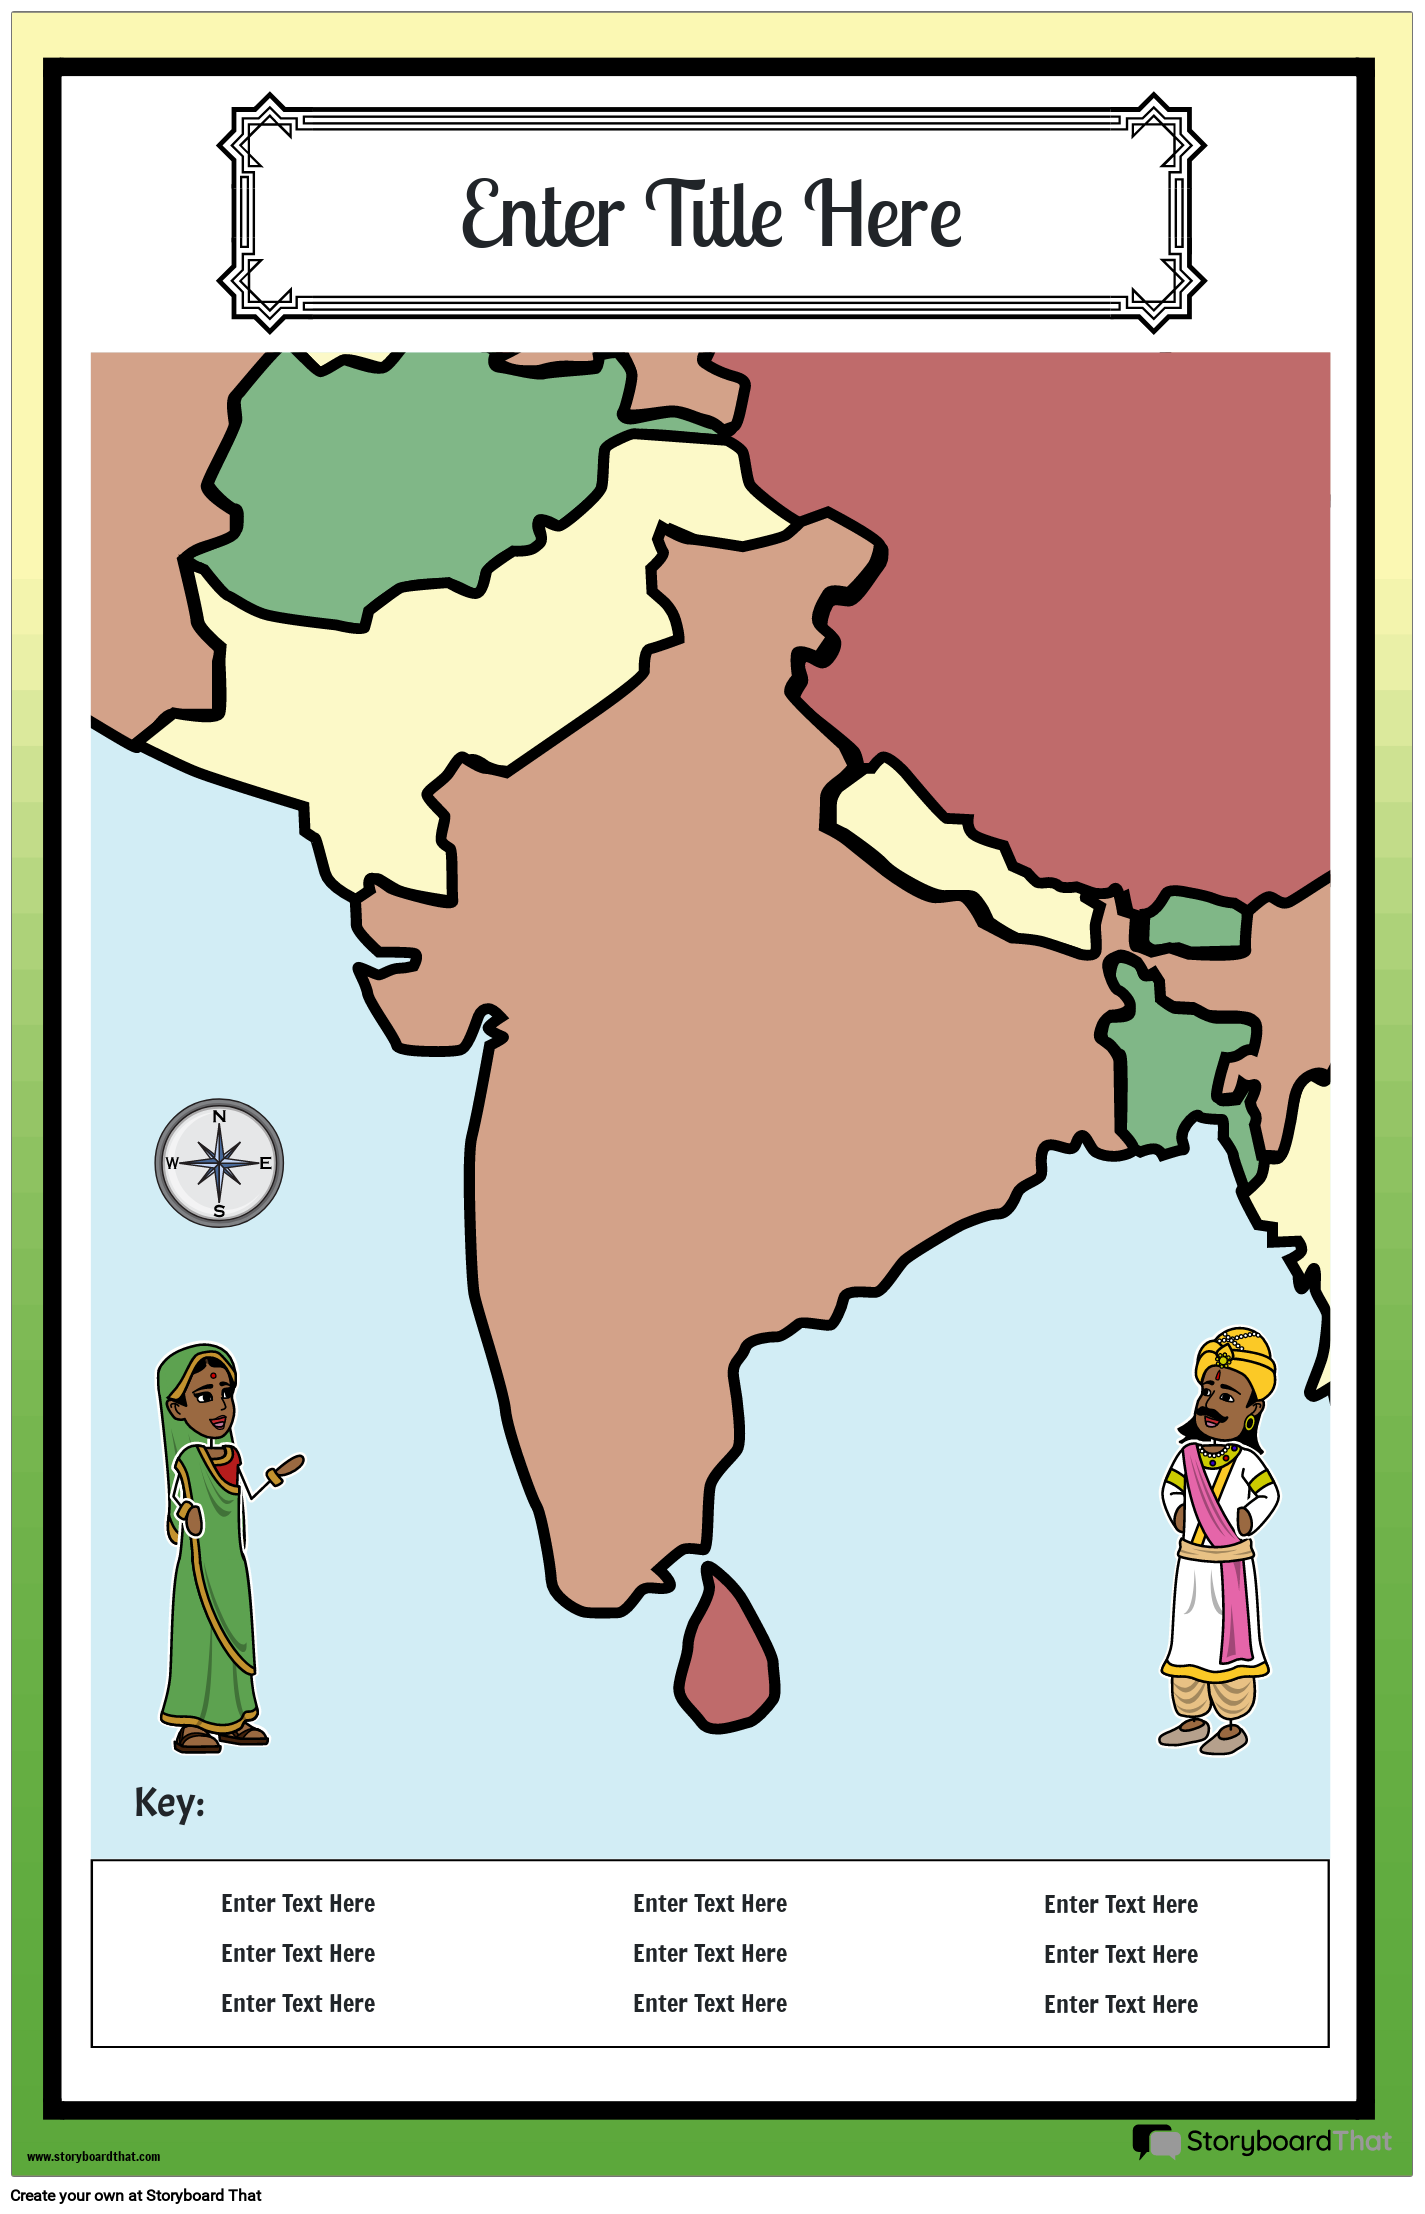 Karttajuliste 27 Värimuotokuva Muinainen Intia